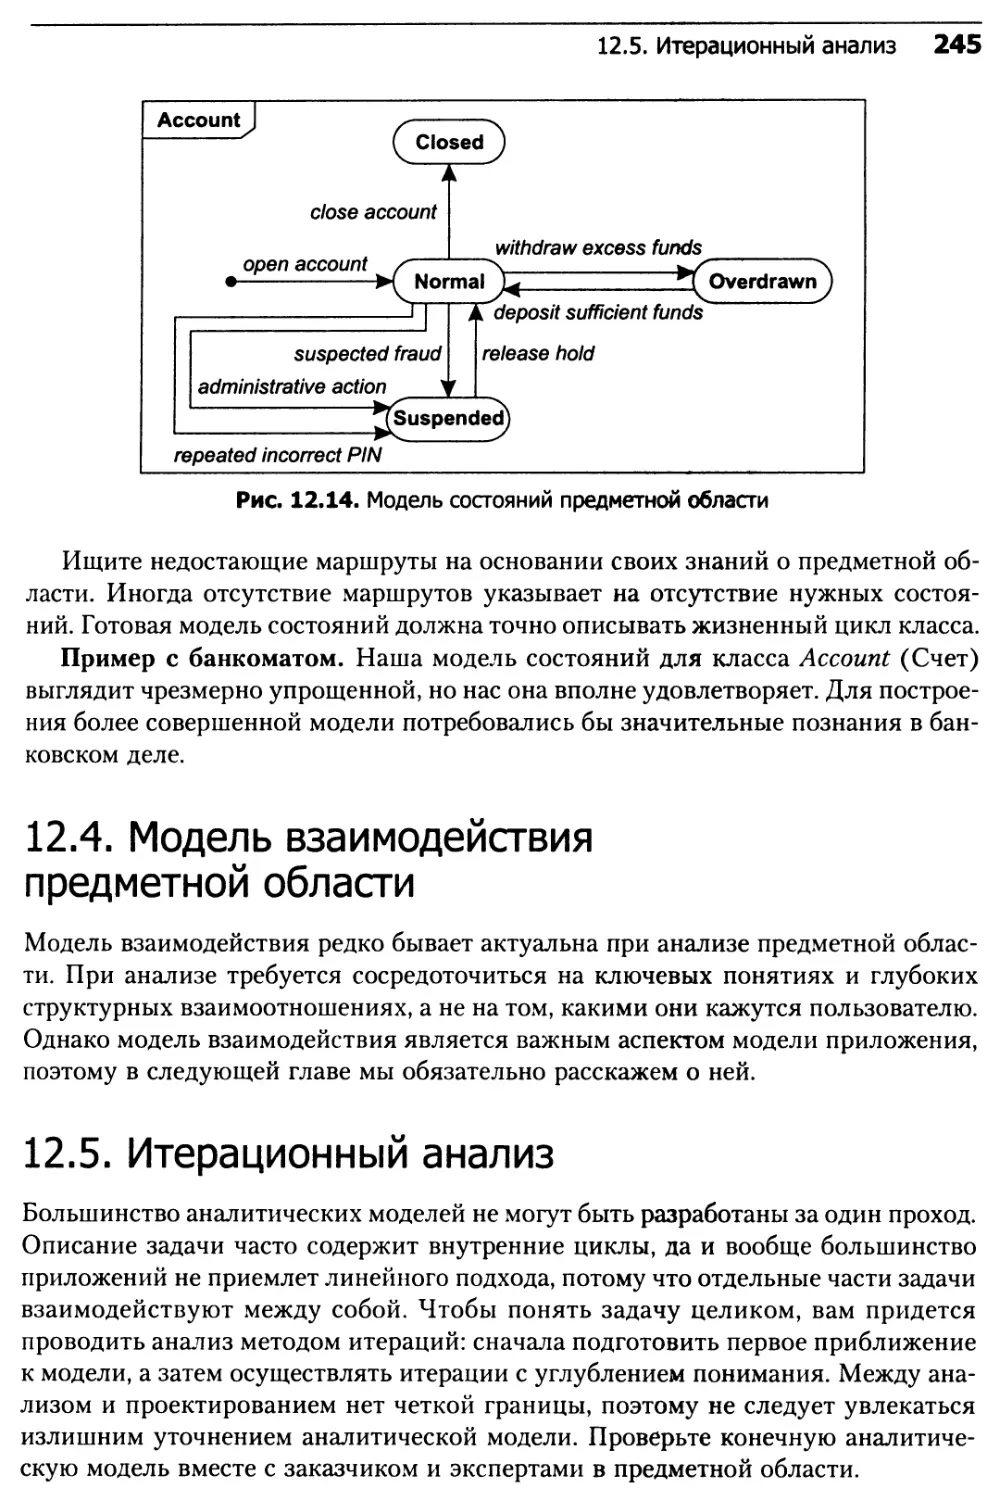 12.4. Модель взаимодействия предметной области
12.5. Итерационный анализ